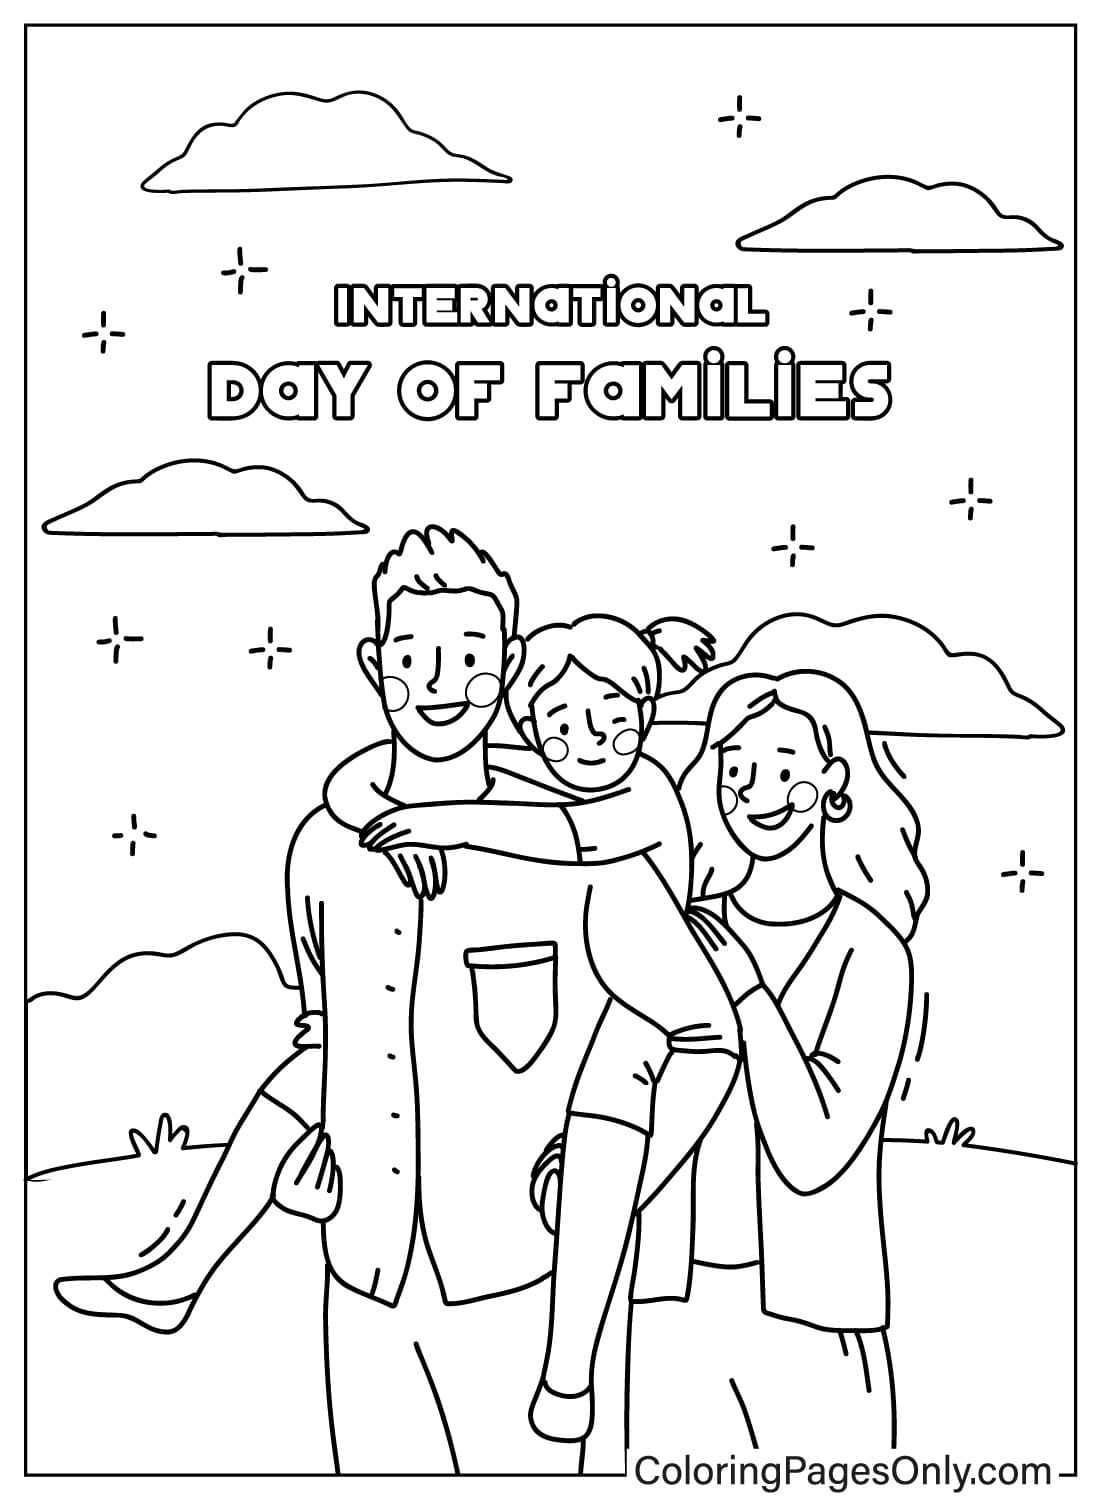 Malvorlage zum Internationalen Tag der Familie im Mai für Kinder vom Mai